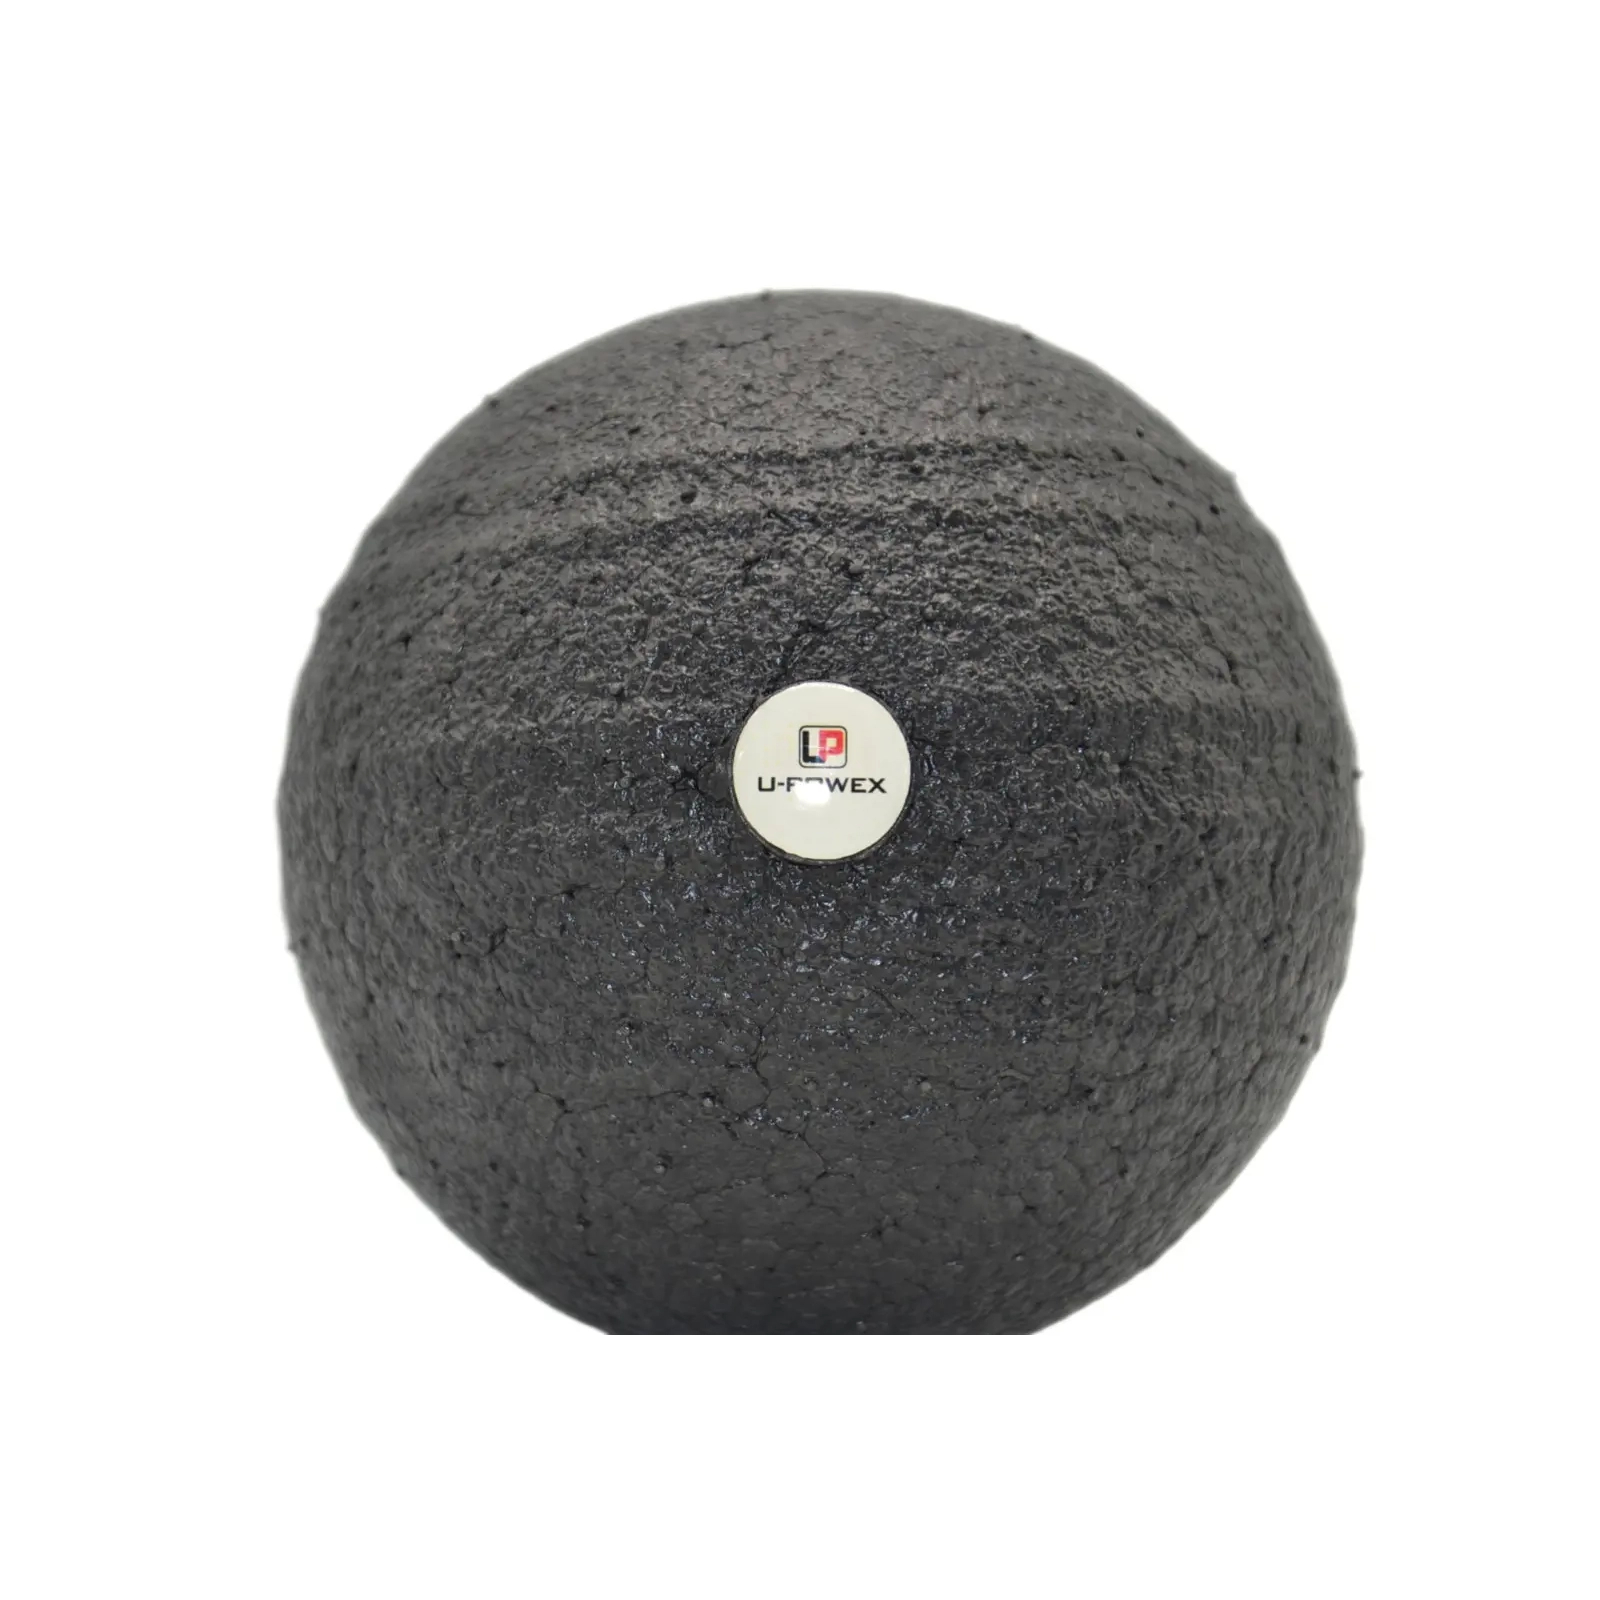 Массажный мяч U-Powex Epp foam ball d10 Black (UP_1003_Ball_D10cm) изображение 4